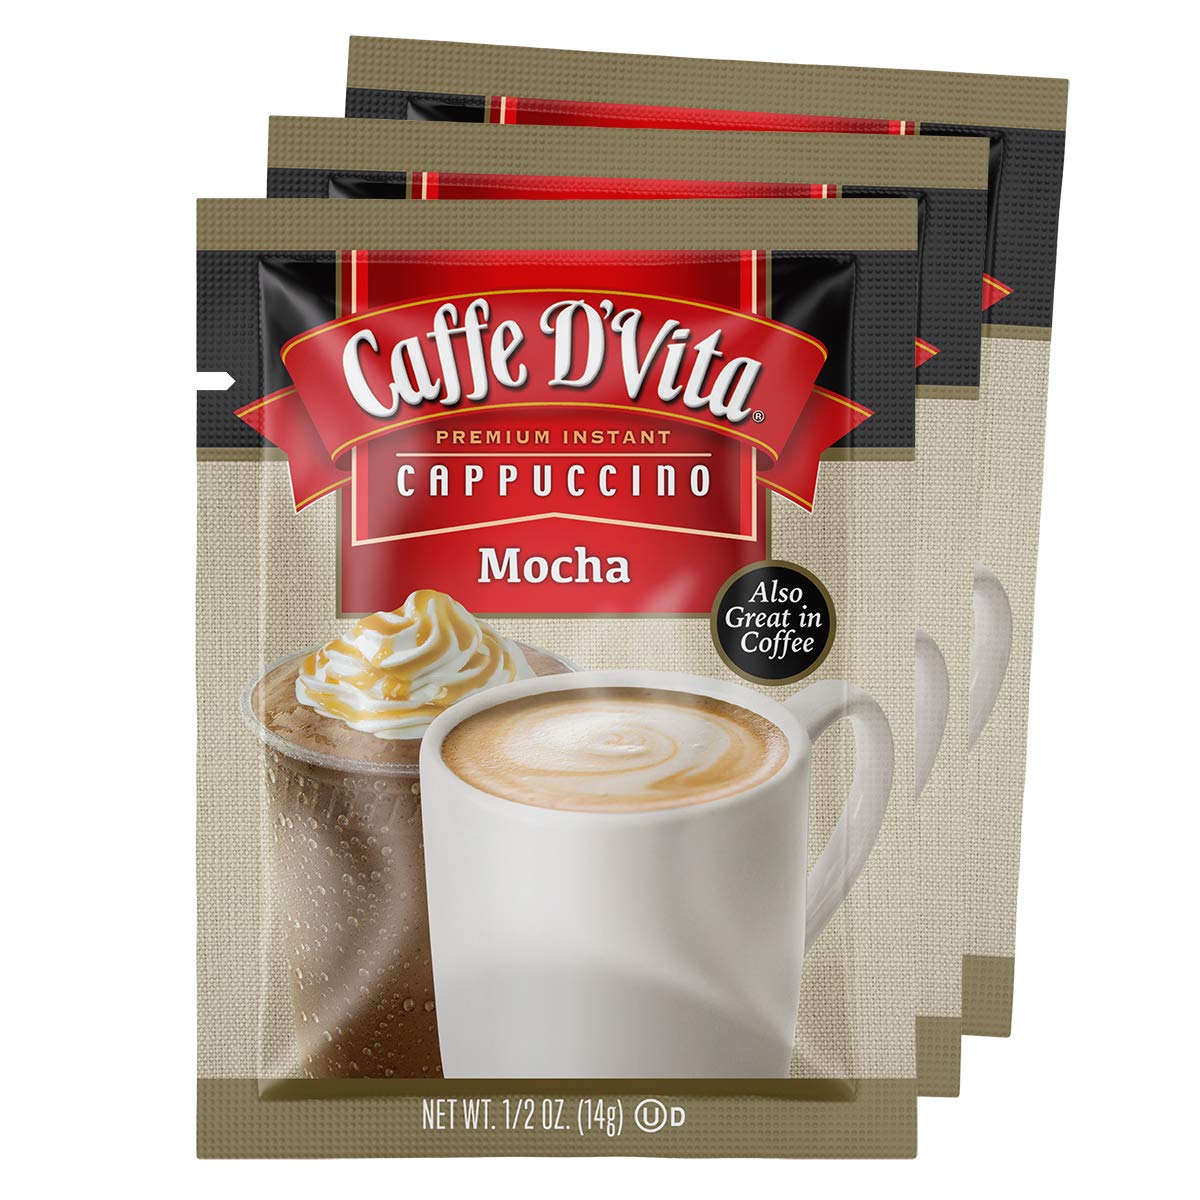 Caffe D’Vita Mocha Cappuccino Mix - Mocha Powder Mix, Instant Cappuccino Mix, Gluten Free, No Ldl cholesterol, No Hydrogenated Oils, No Trans Fats, 99% Caffeine Free, Mocha Mix - 0.5 Oz Packets, 24-Pack.